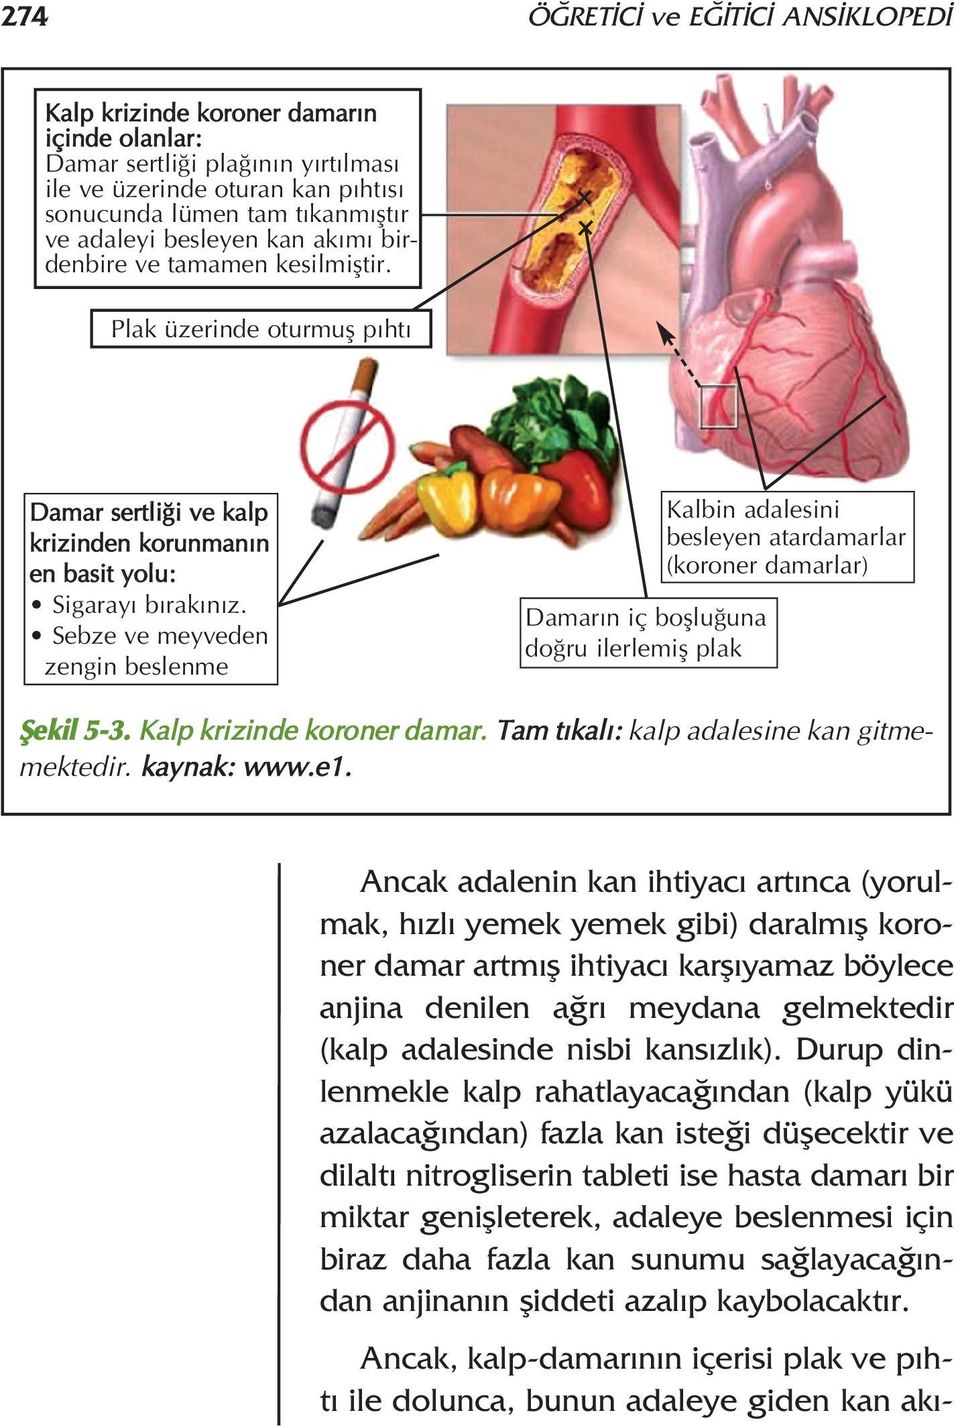 Sebze ve meyveden zengin beslenme Damar n iç bofllu una do ru ilerlemifl plak Kalbin adalesini besleyen atardamarlar (koroner damarlar) fiekil 5-3. Kalp krizinde koroner damar.